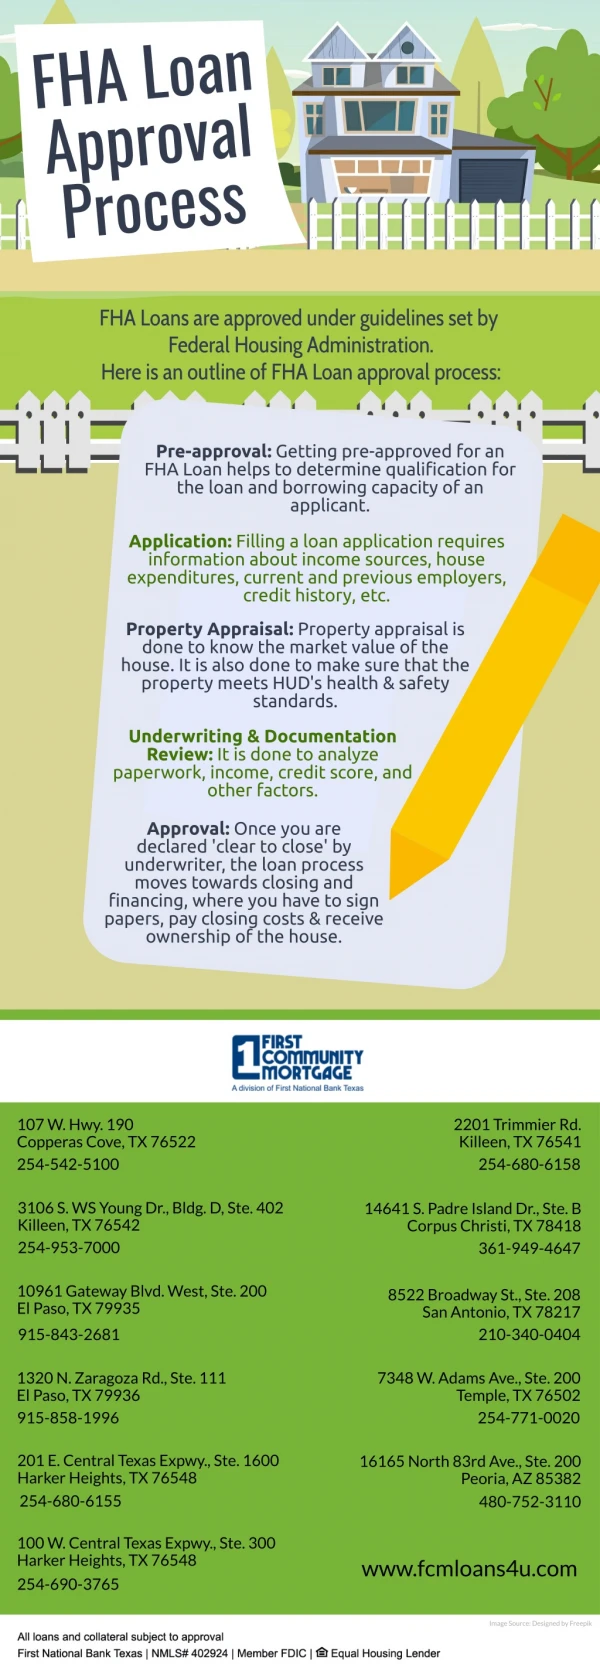 FHA Loan Approval Process